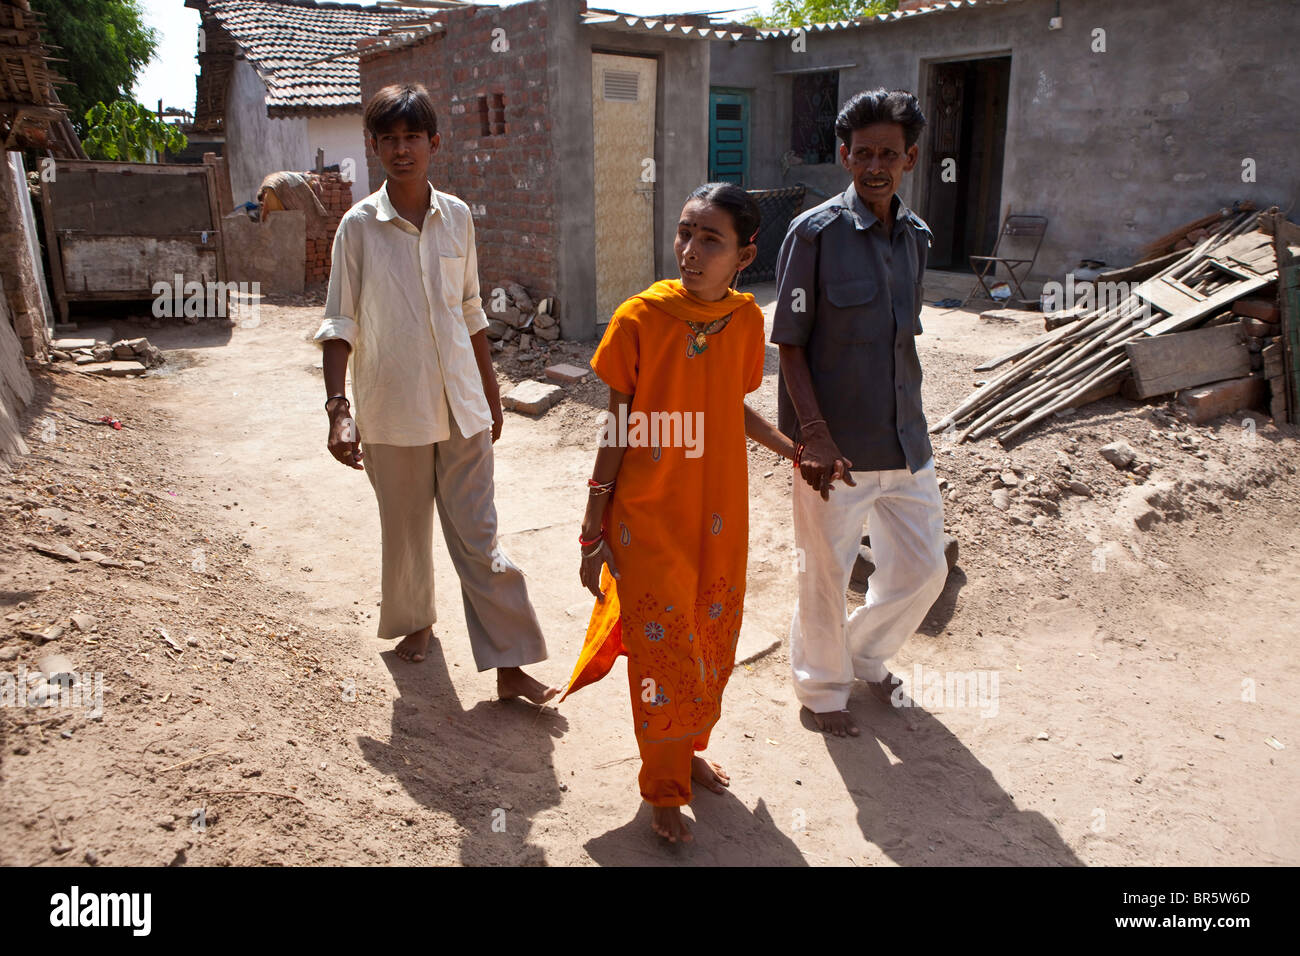 Hansa que es sorda y ciega, camina a través de su aldea, acompañado por su padre y su hermano. Foto de stock